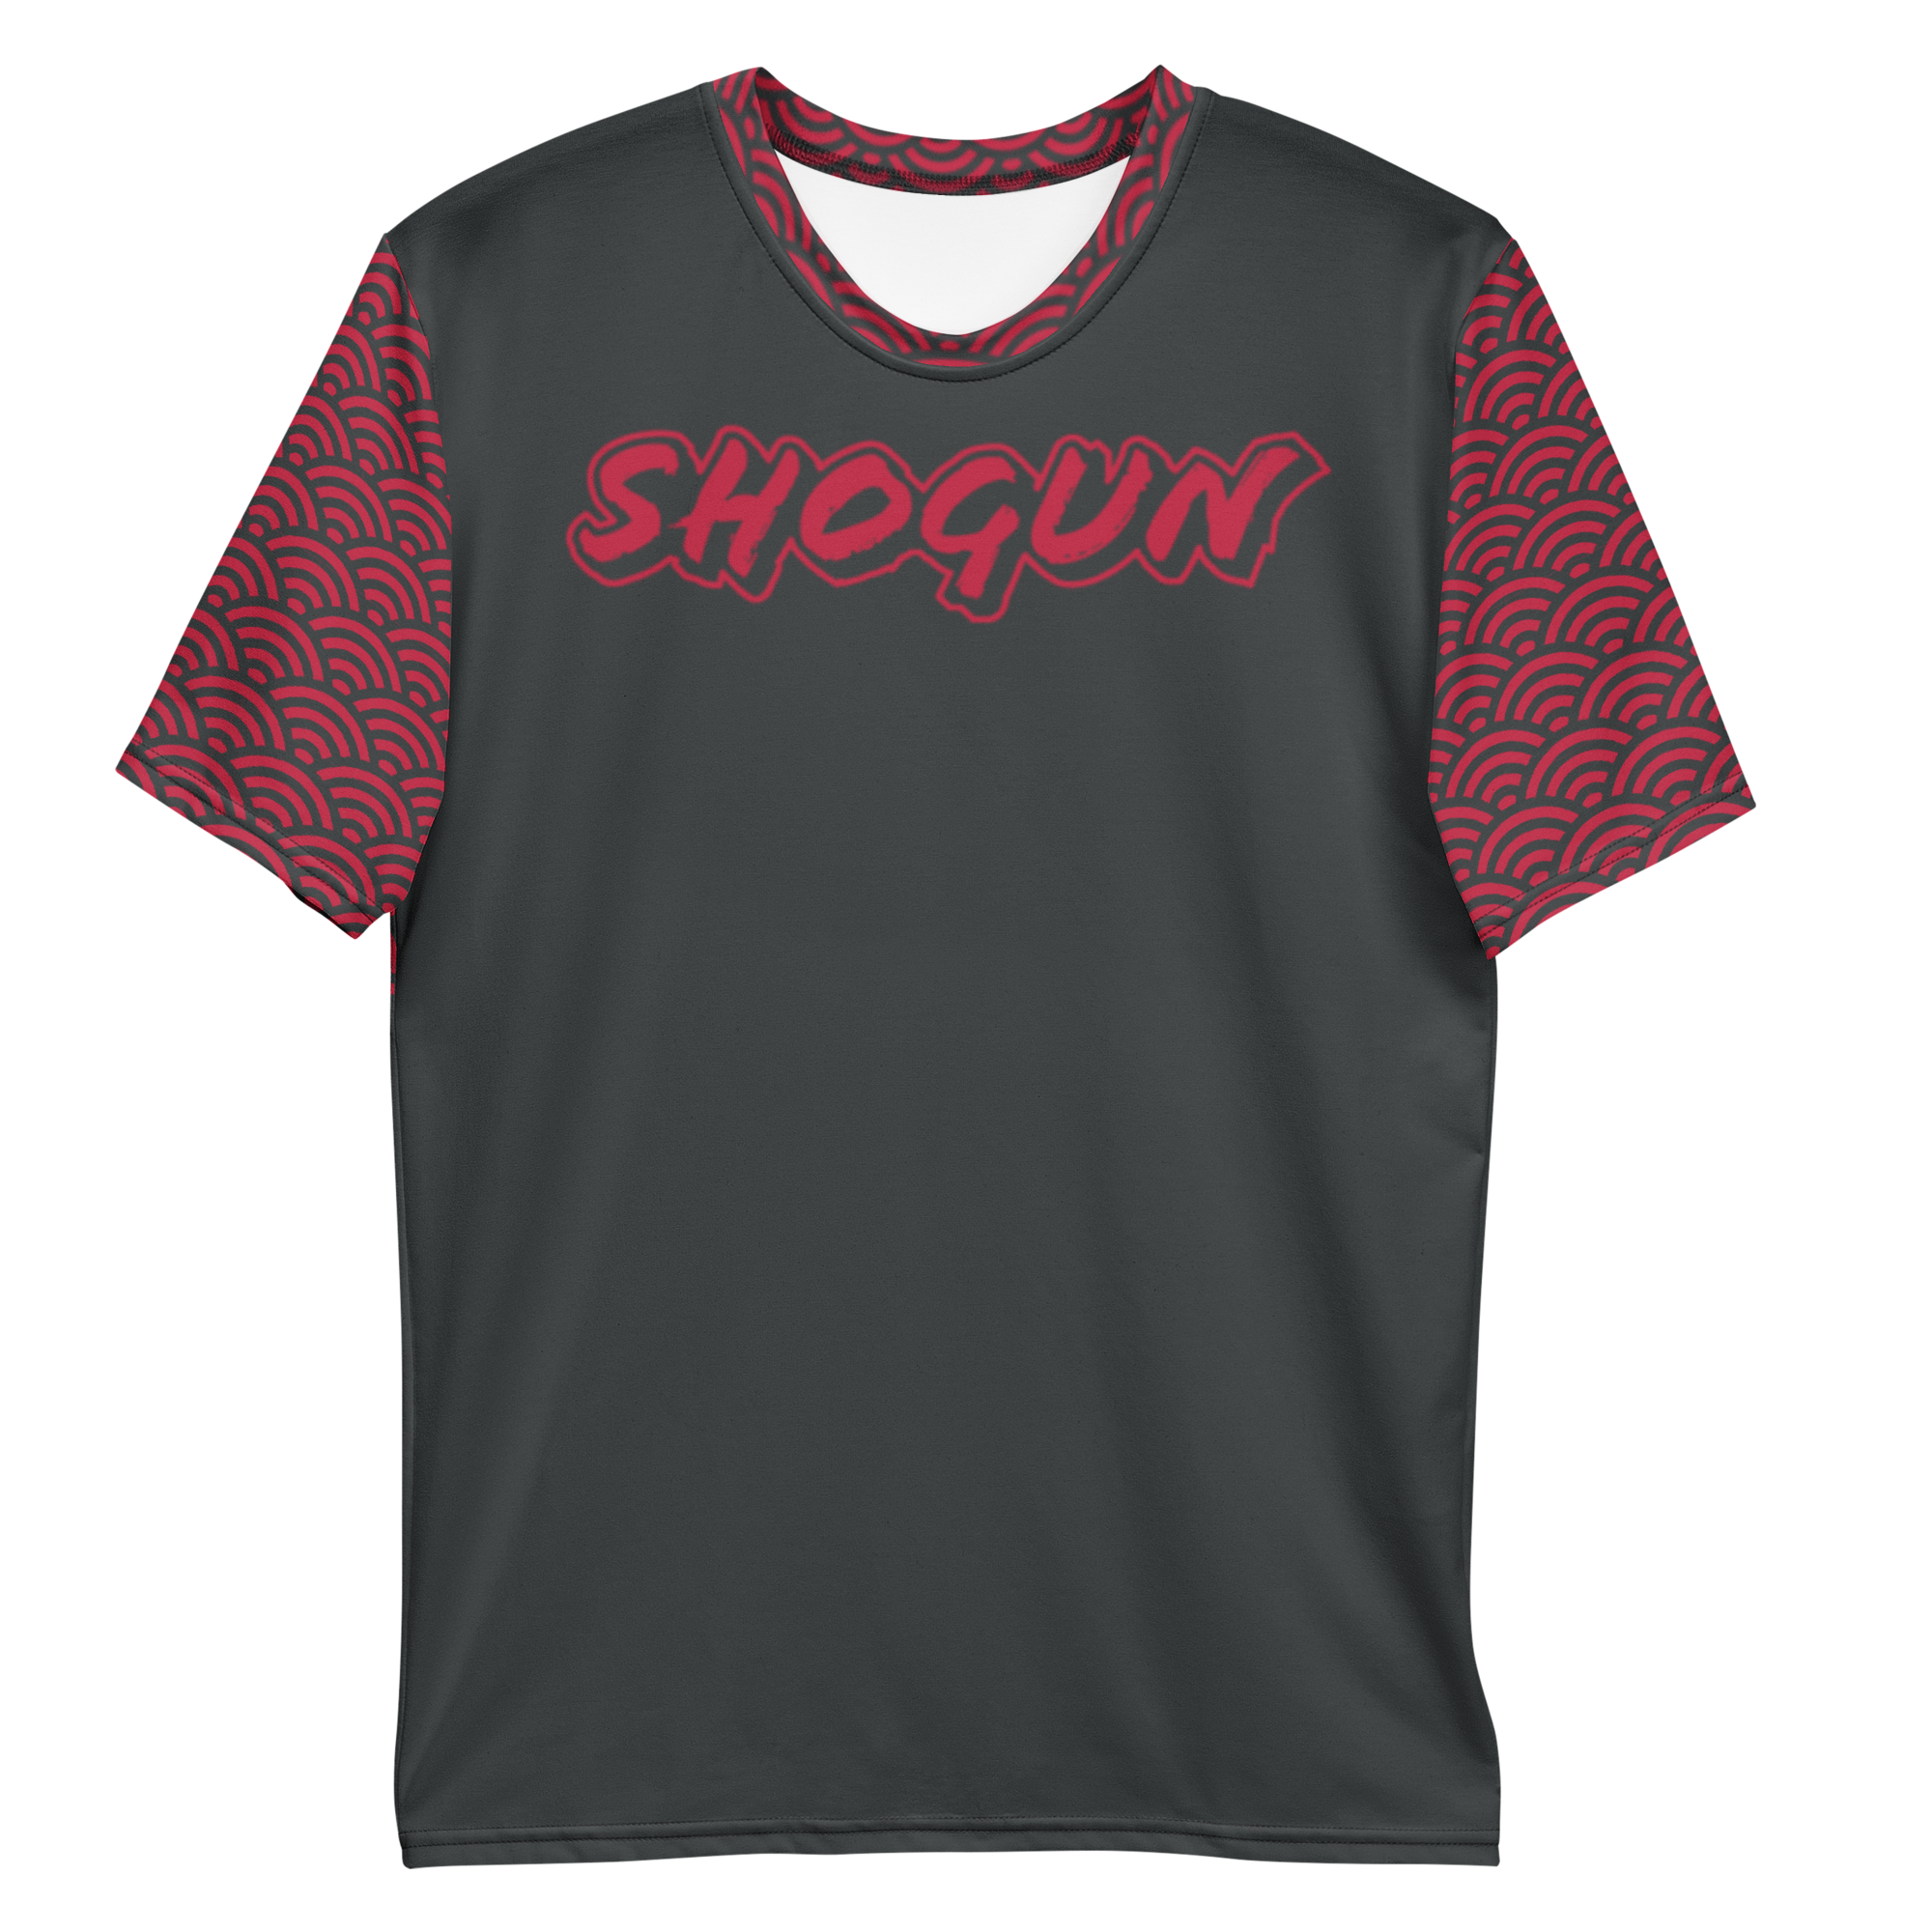 Shogun Men's t-shirt